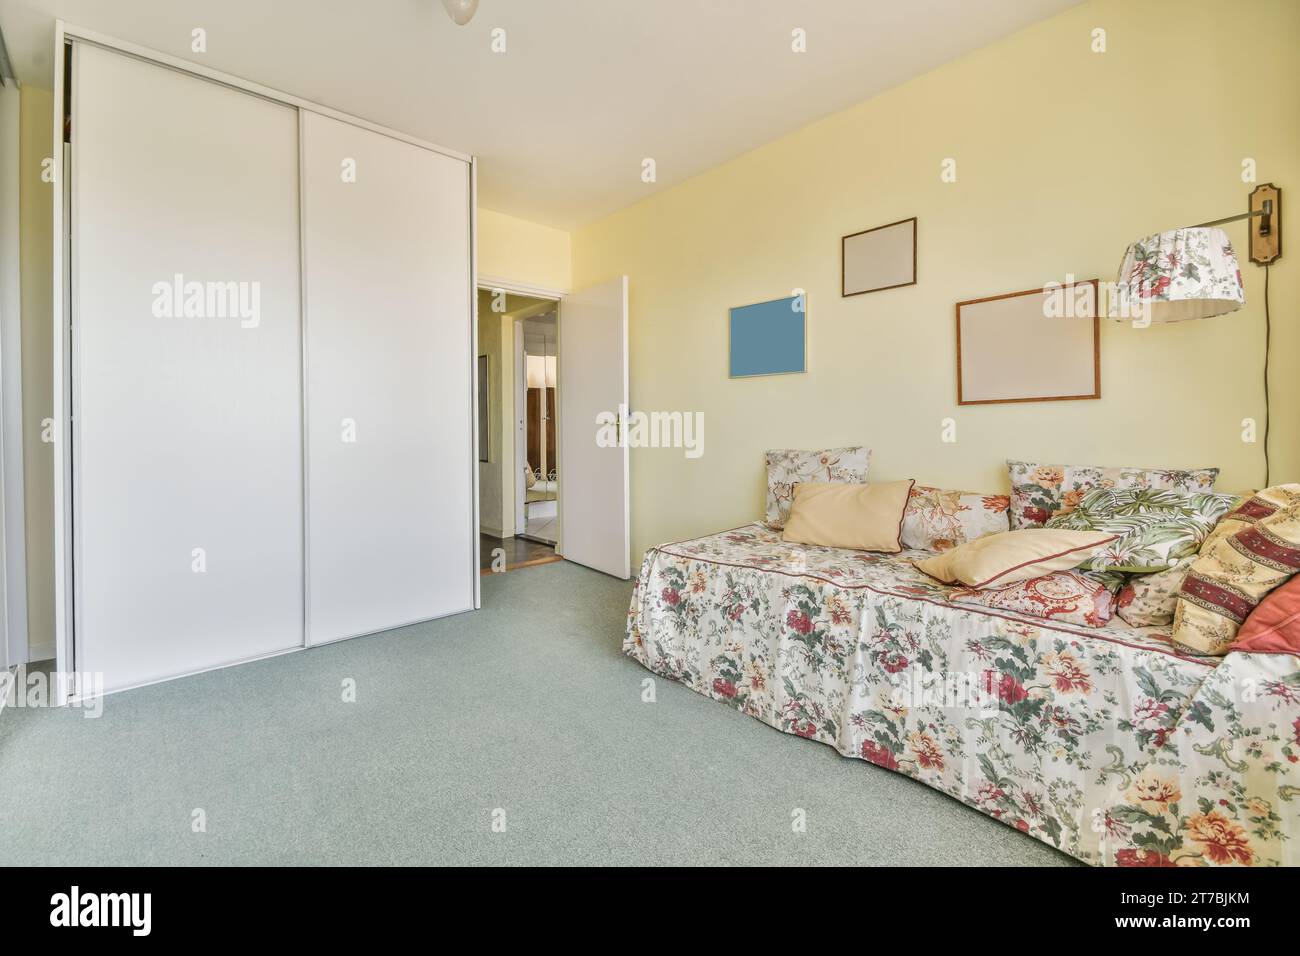 Ein Wohnzimmer mit gelben Wänden und geblümtem Bett, das über das Zimmer verteilt ist, es gibt eine offene Tür, die zu einem anderen Zimmer führt Stockfoto